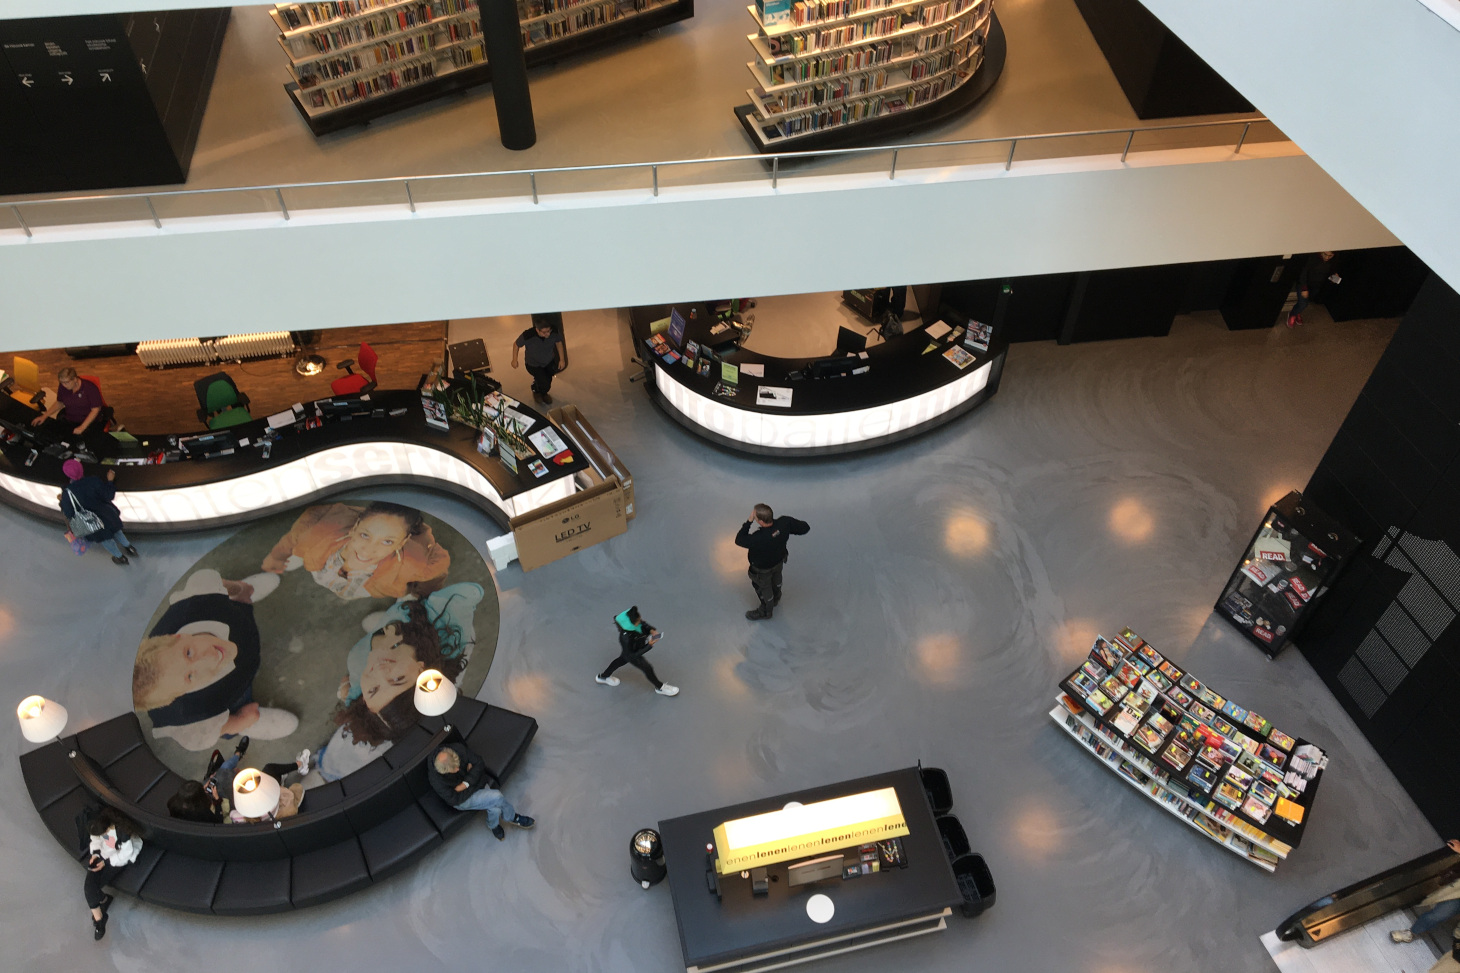 De Nieuwe Bibliothekeet d’Almere